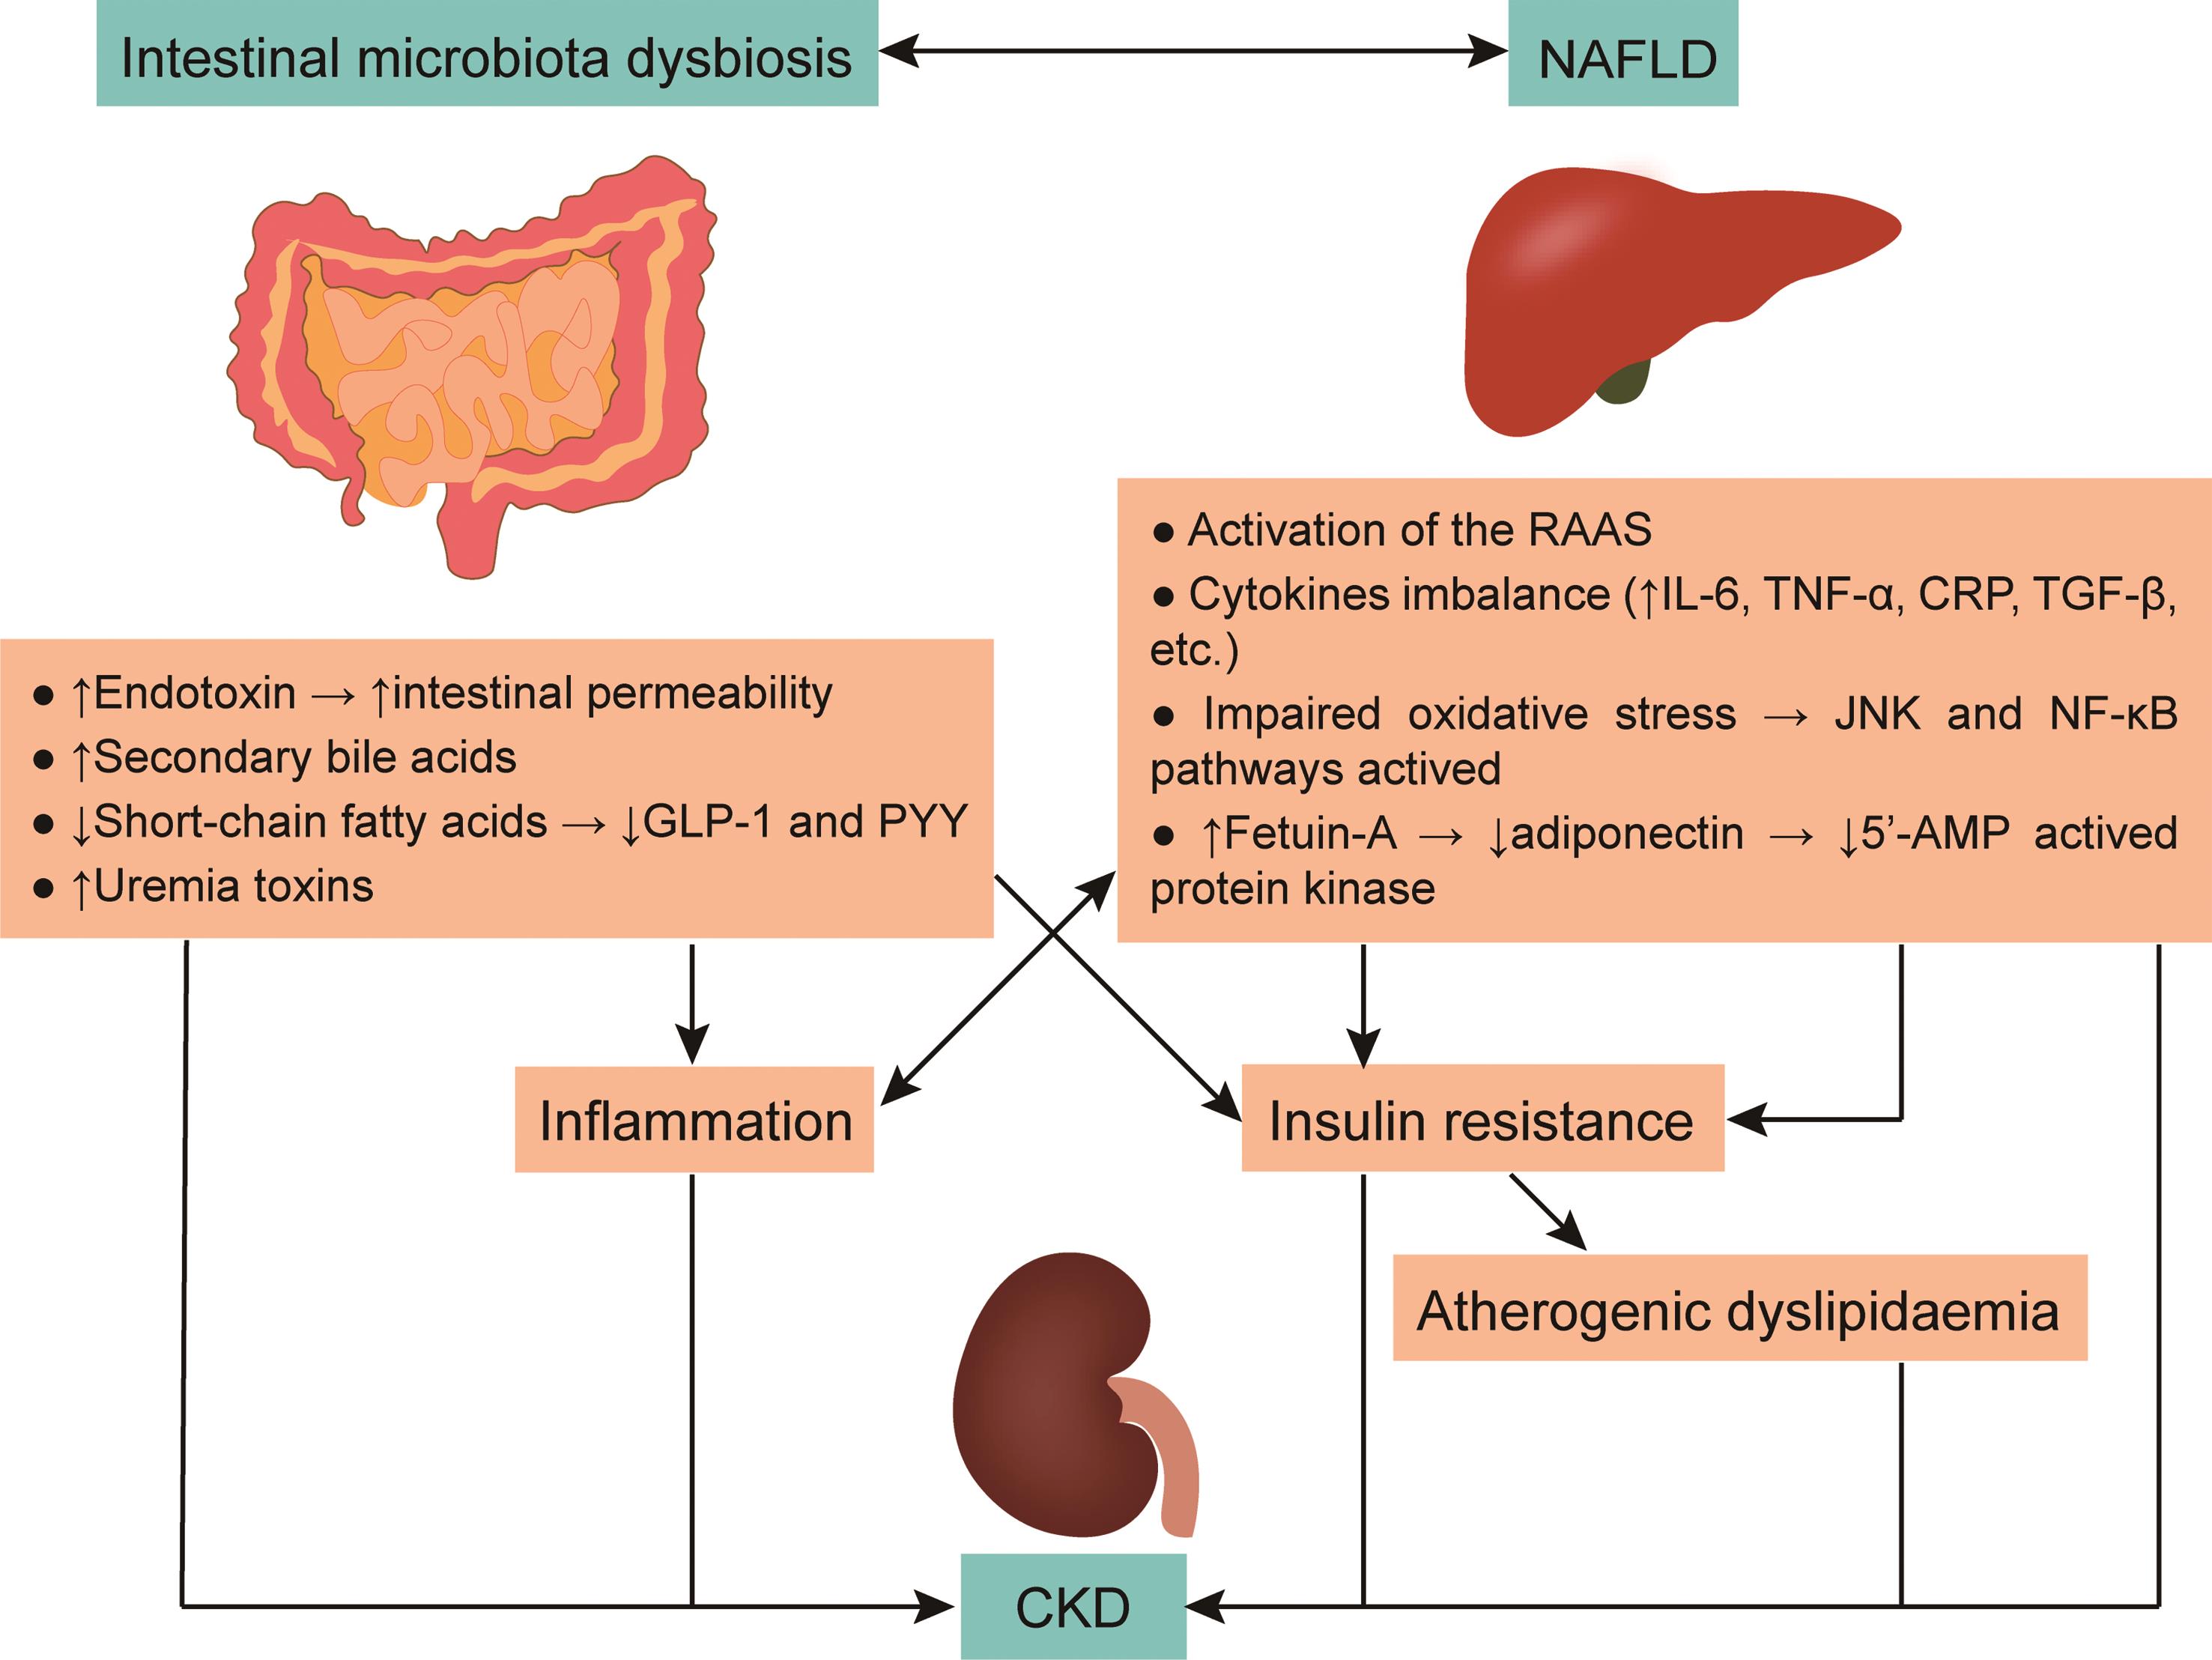 Putative biological mechanisms linking NAFLD and CKD.